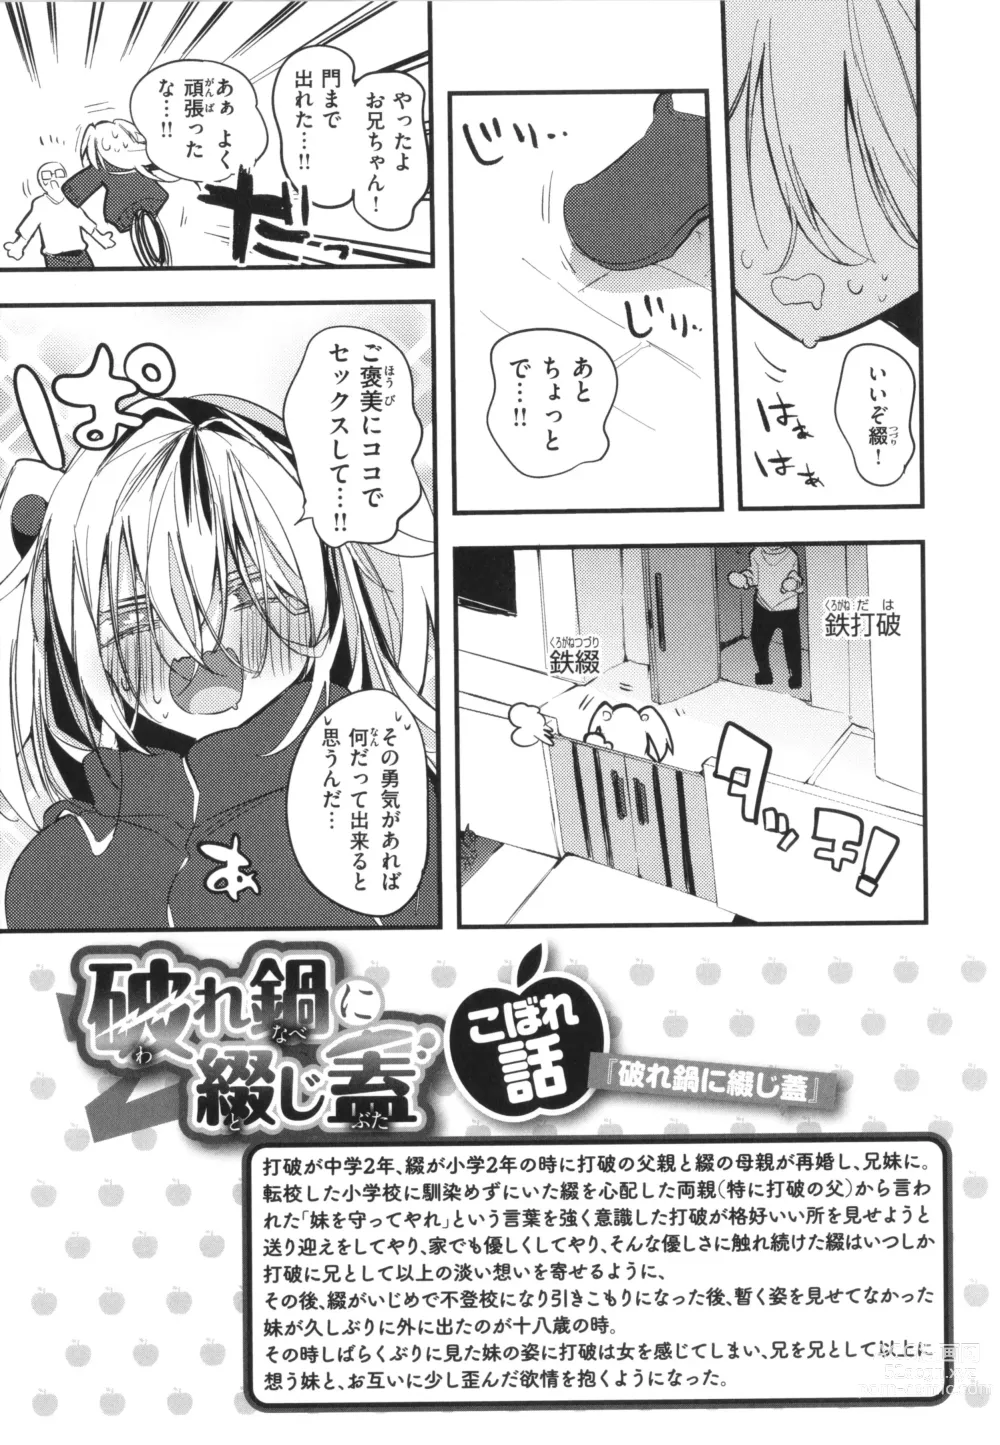 Page 155 of manga New Tawawa Paradise